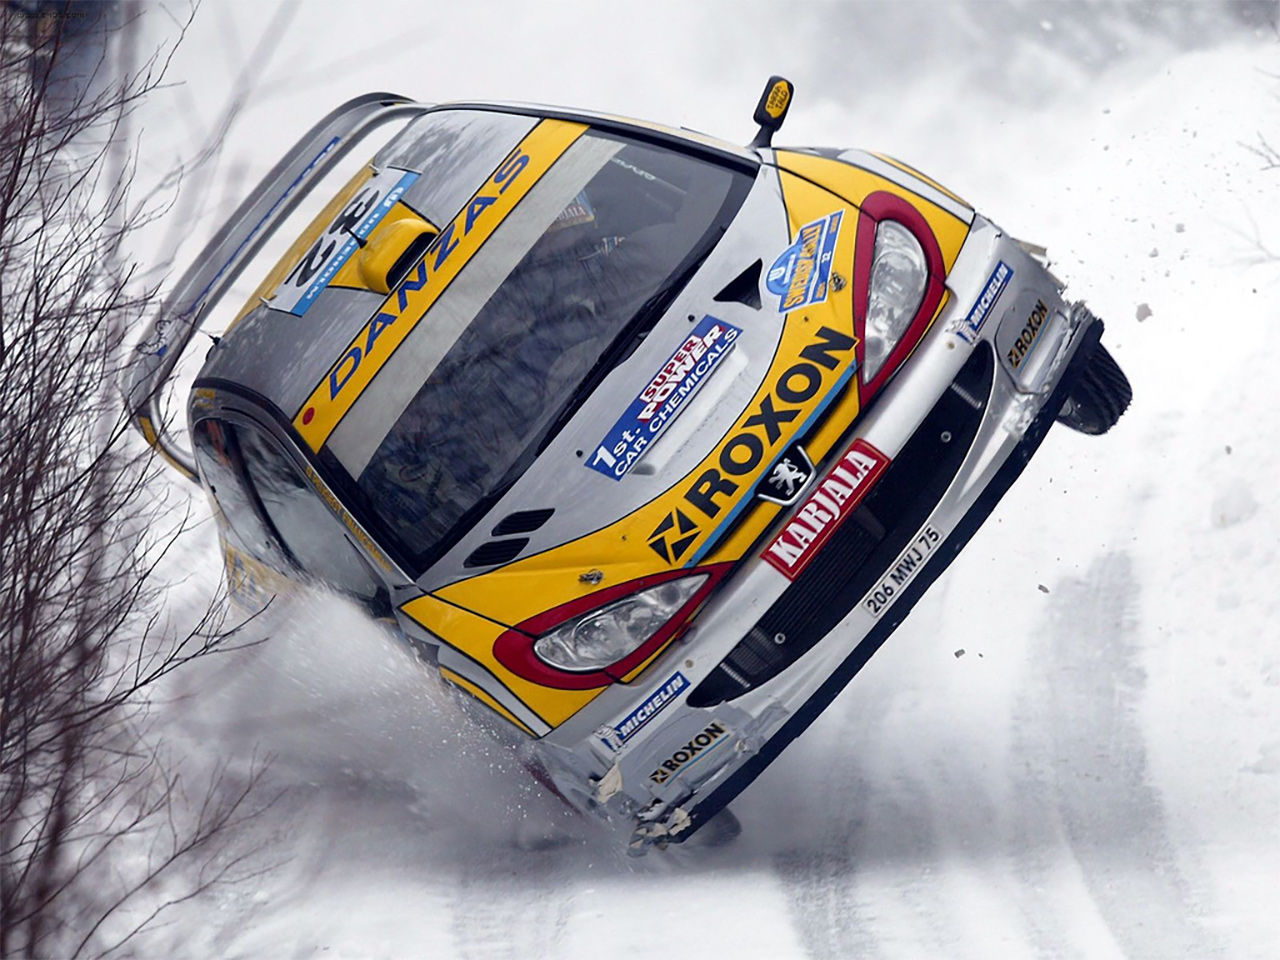 Rallye Peugeot 206